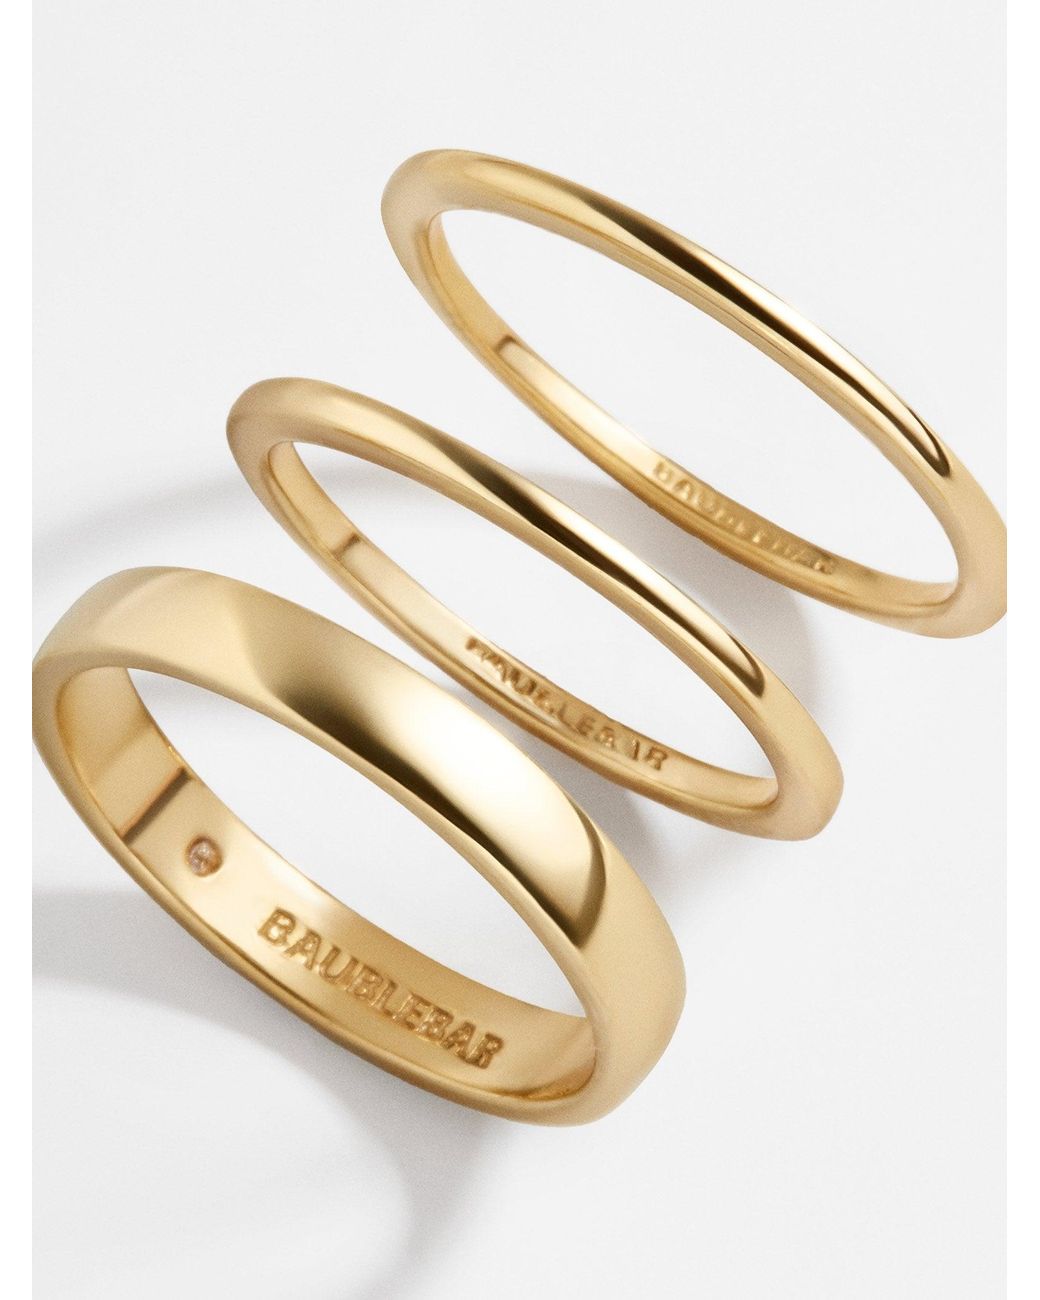 Baublebar Mamie 18K Gold Ring Set - Gold